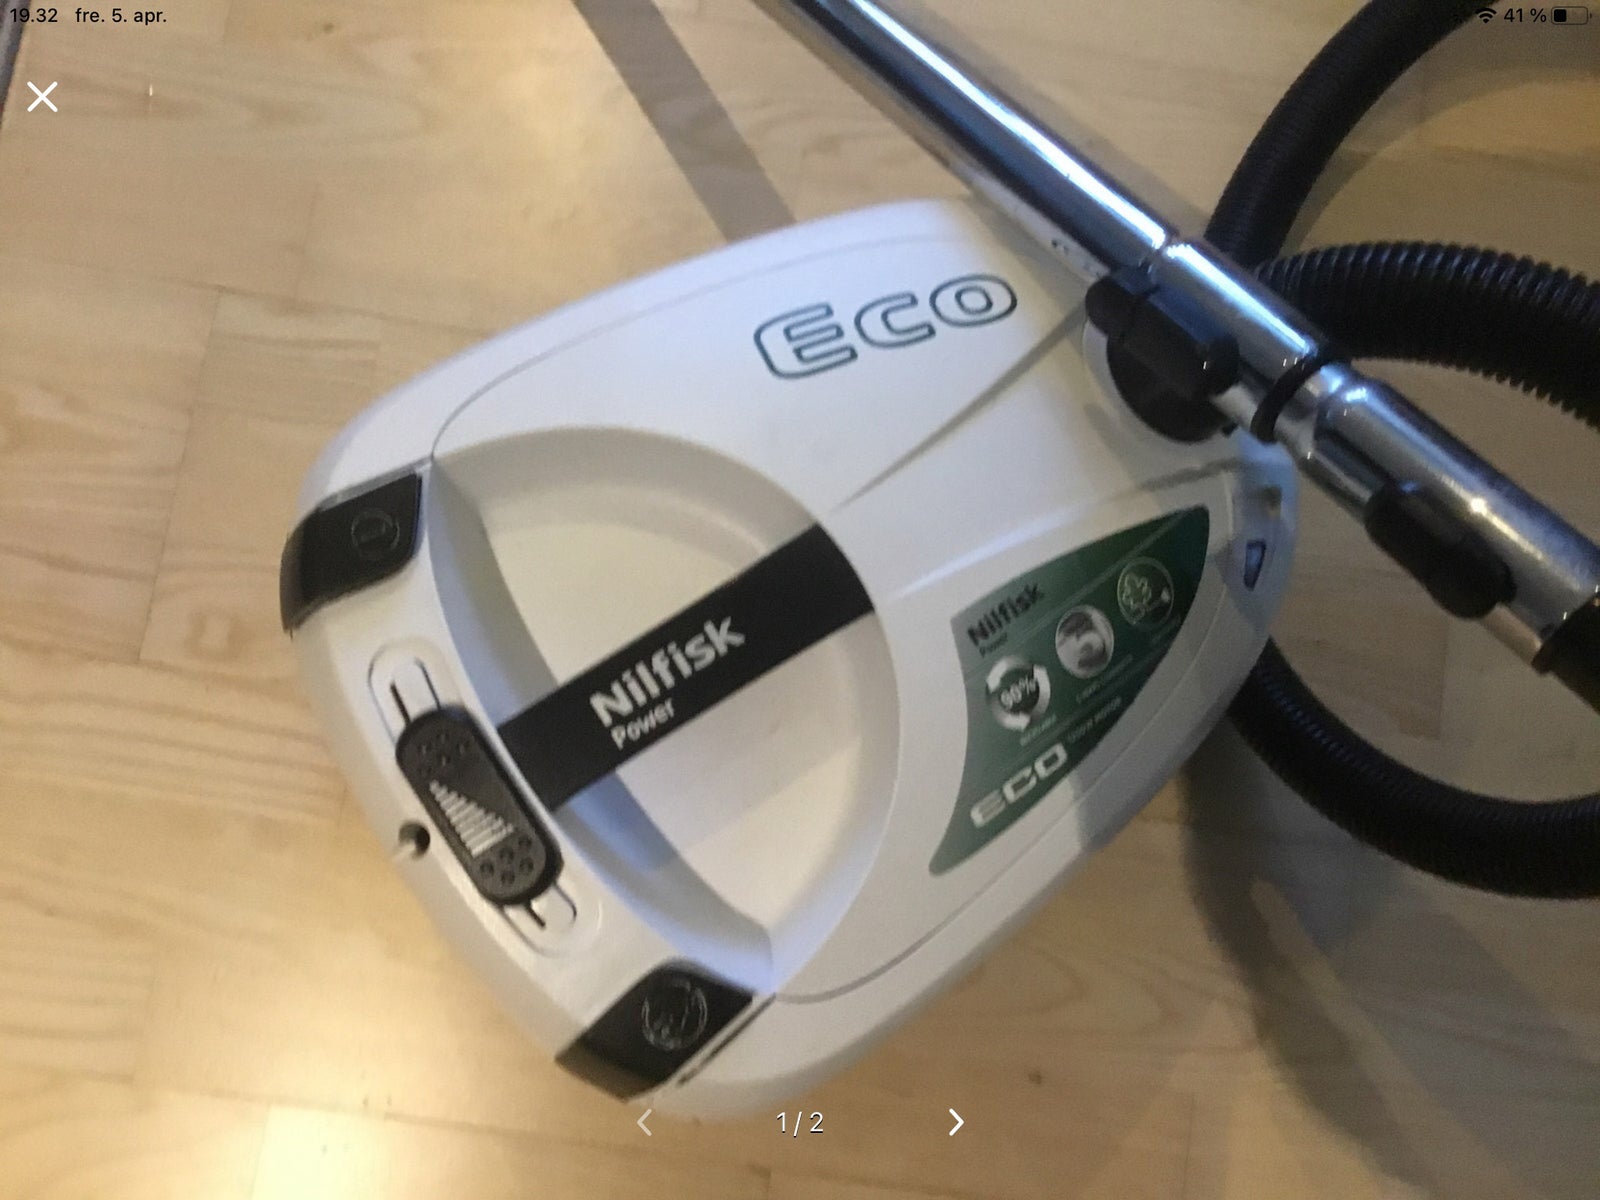 Støvsuger, Nilfisk Eco, 1250 watt